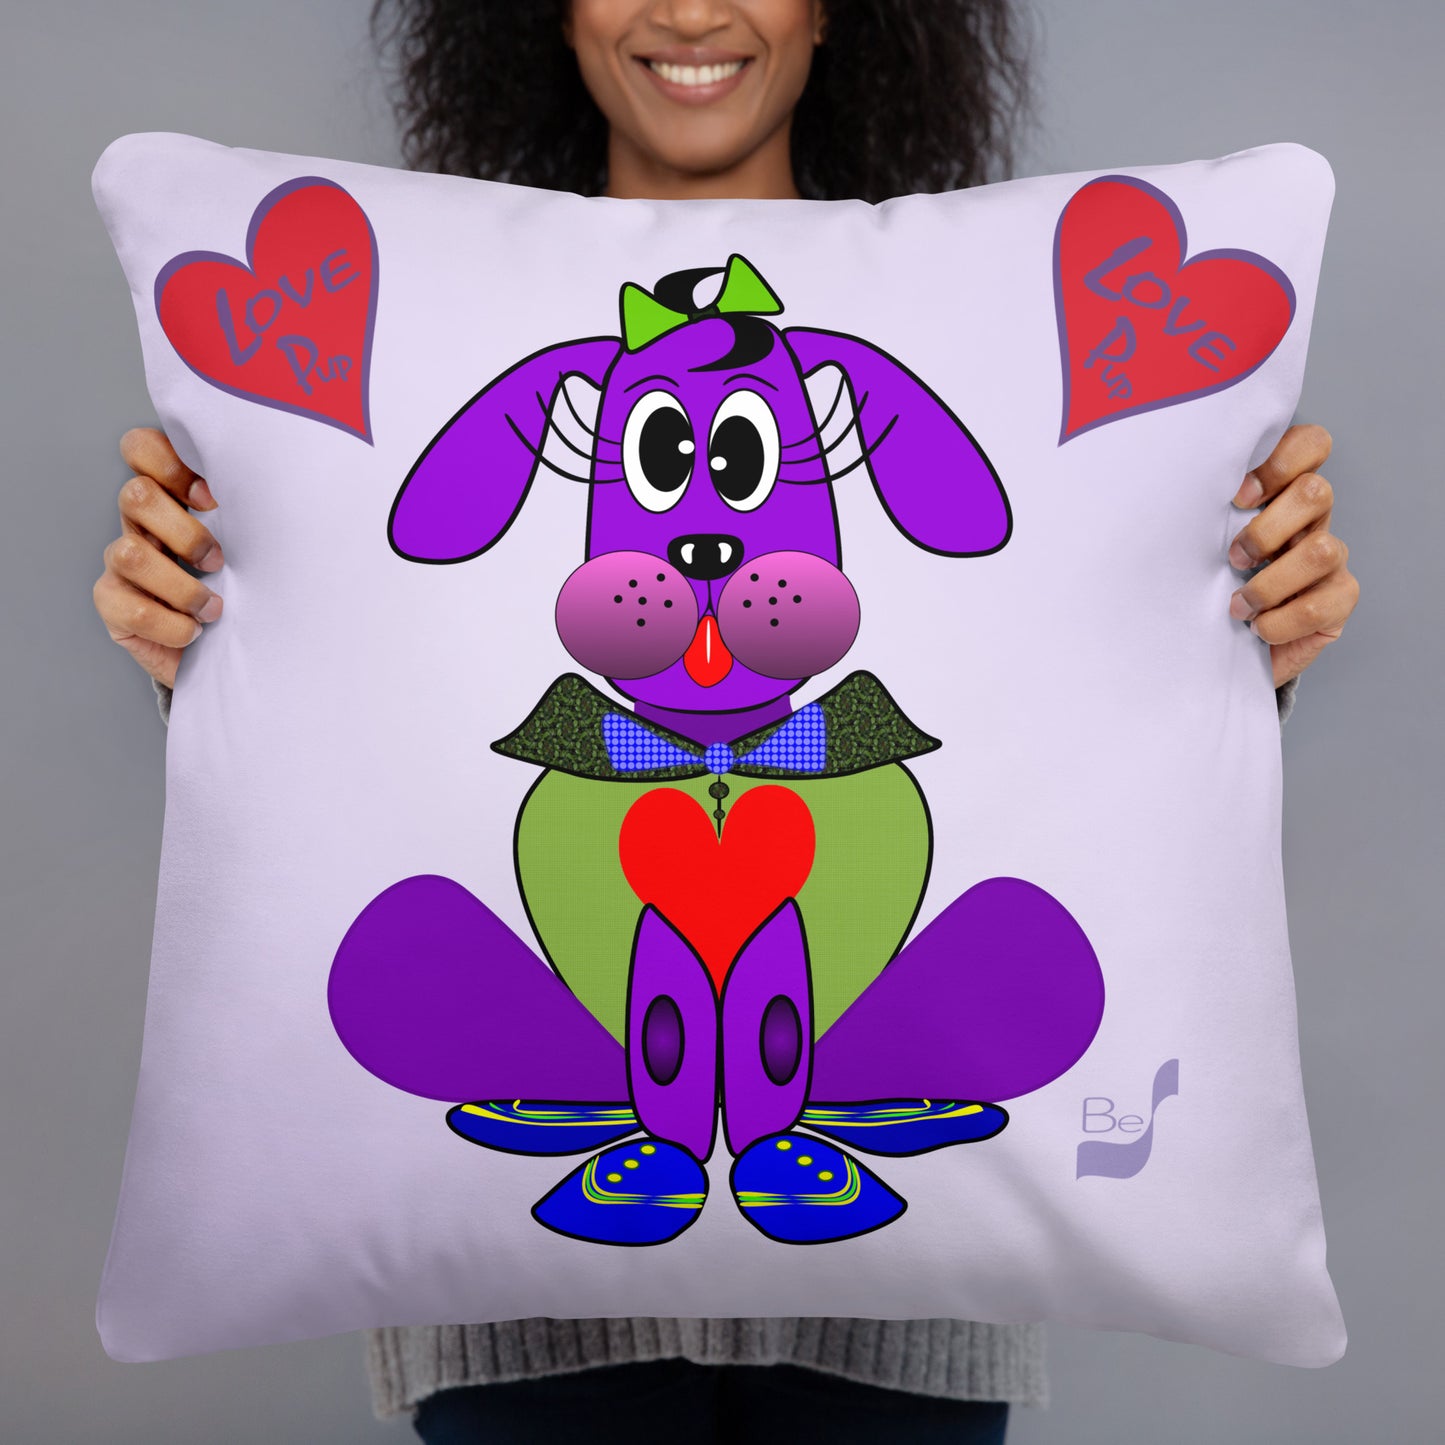 Love Pup 1 Purple BeSculpt Kids Throw Pillow S